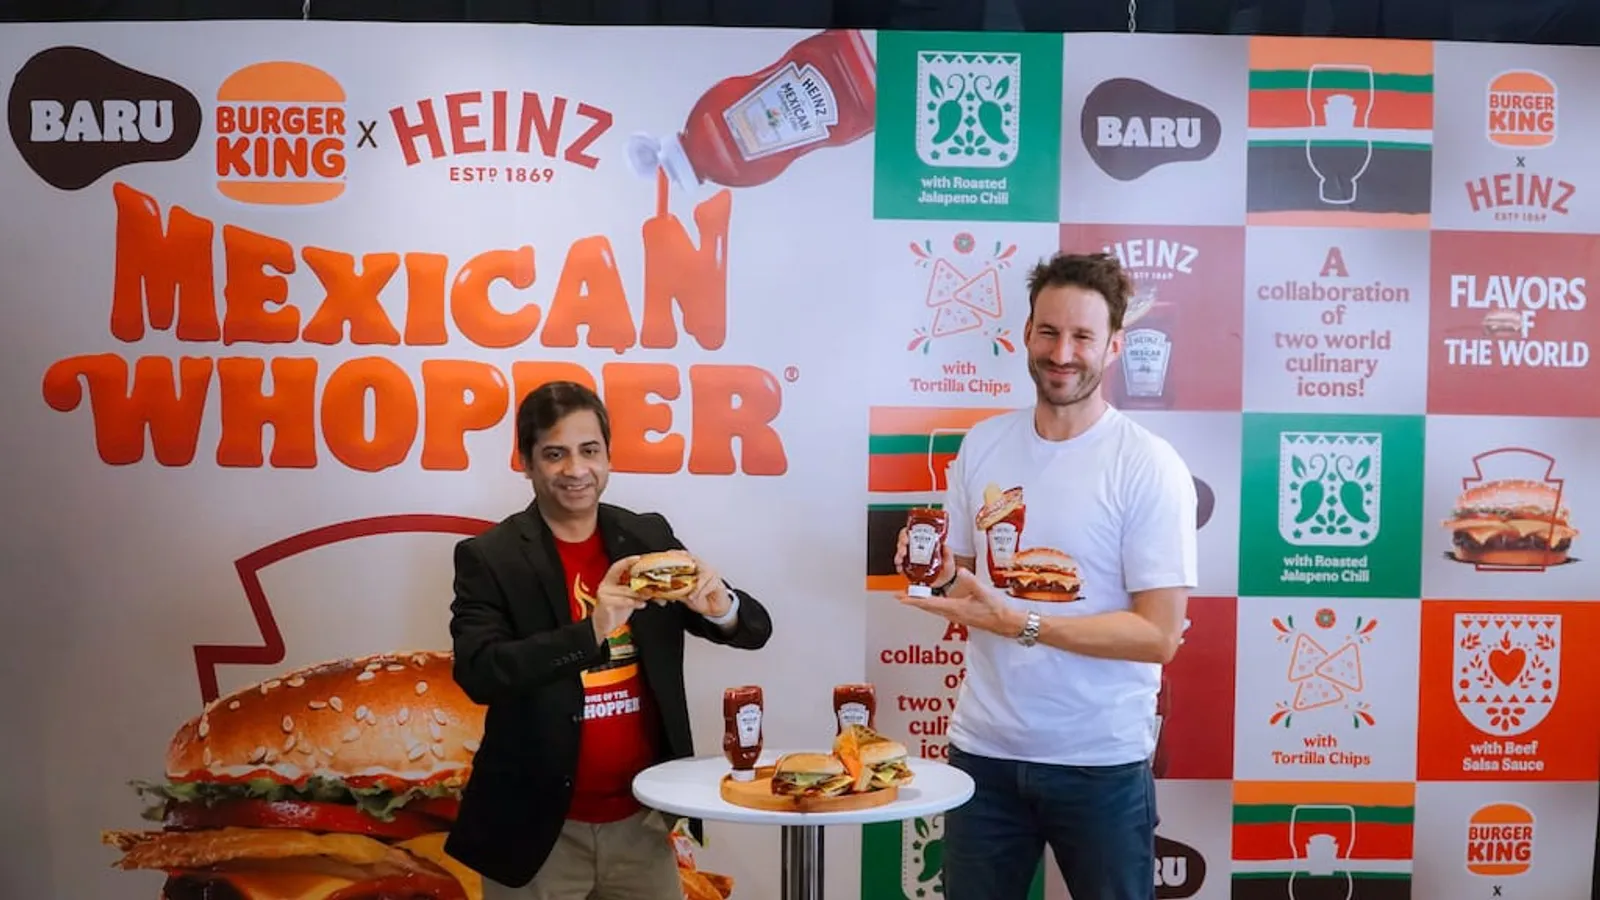 Gandeng Burger King, Heinz Luncurkan Mexican Whopper!